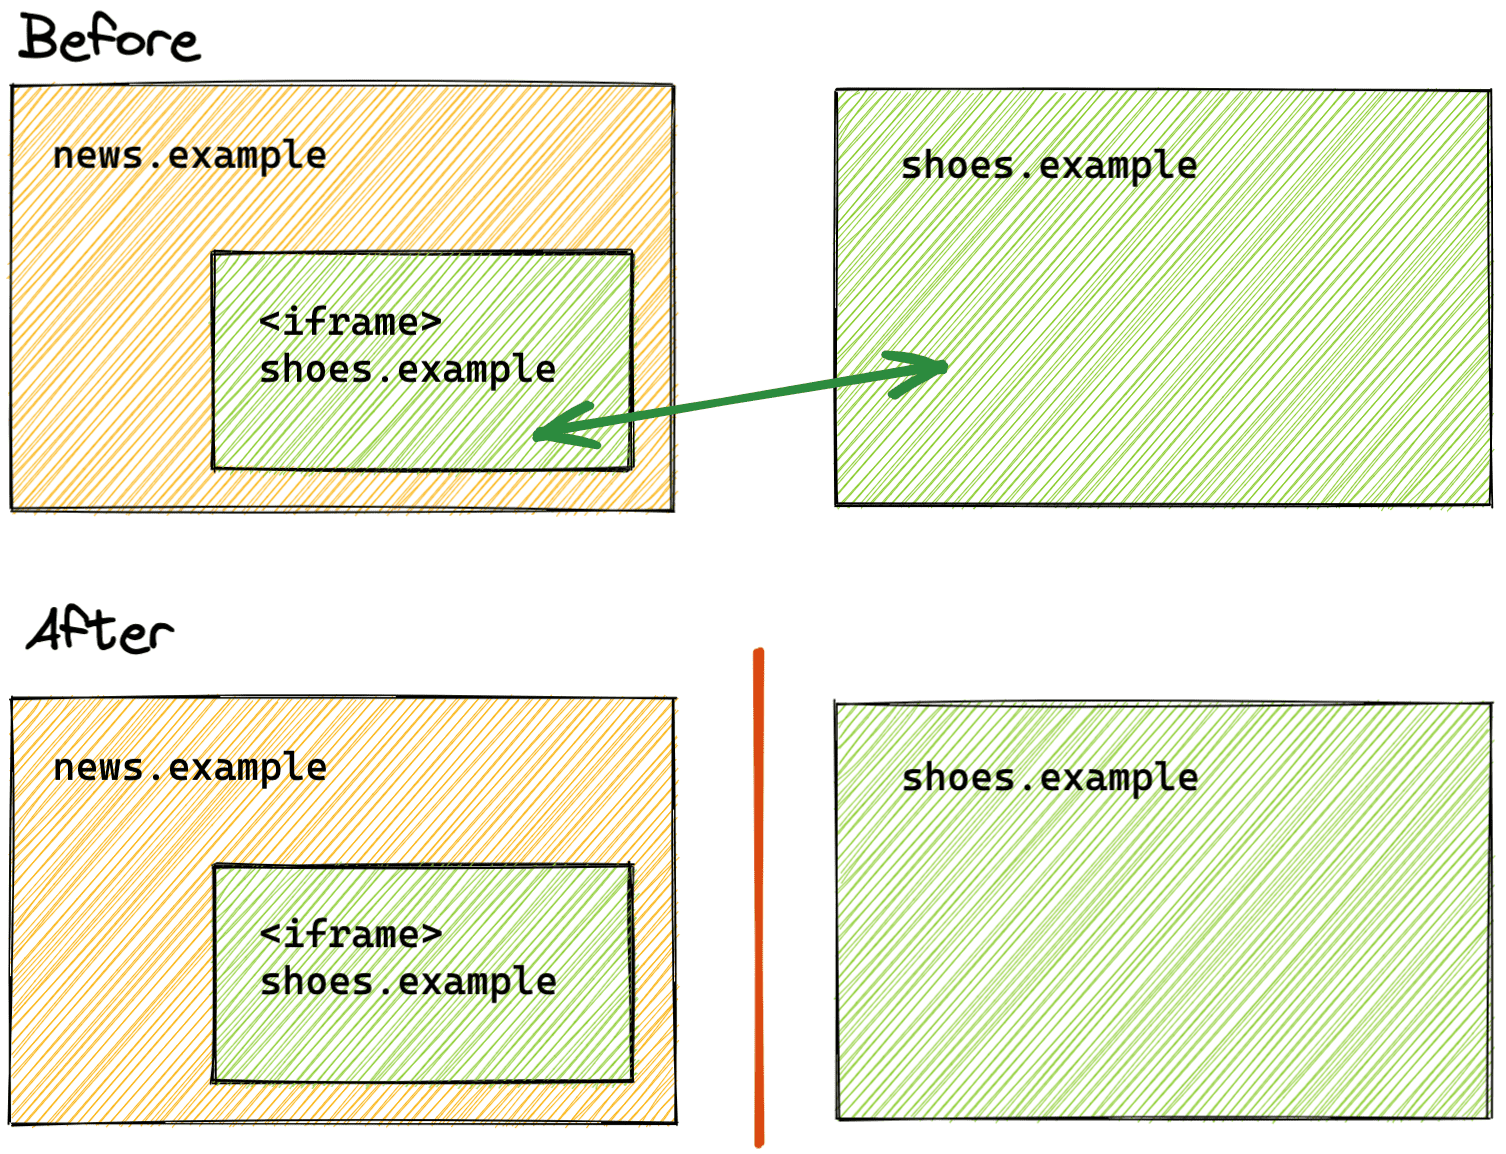 השוואה של חלוקה למחיצות (partitioning) באחסון לפני ואחרי מצב האחסון.